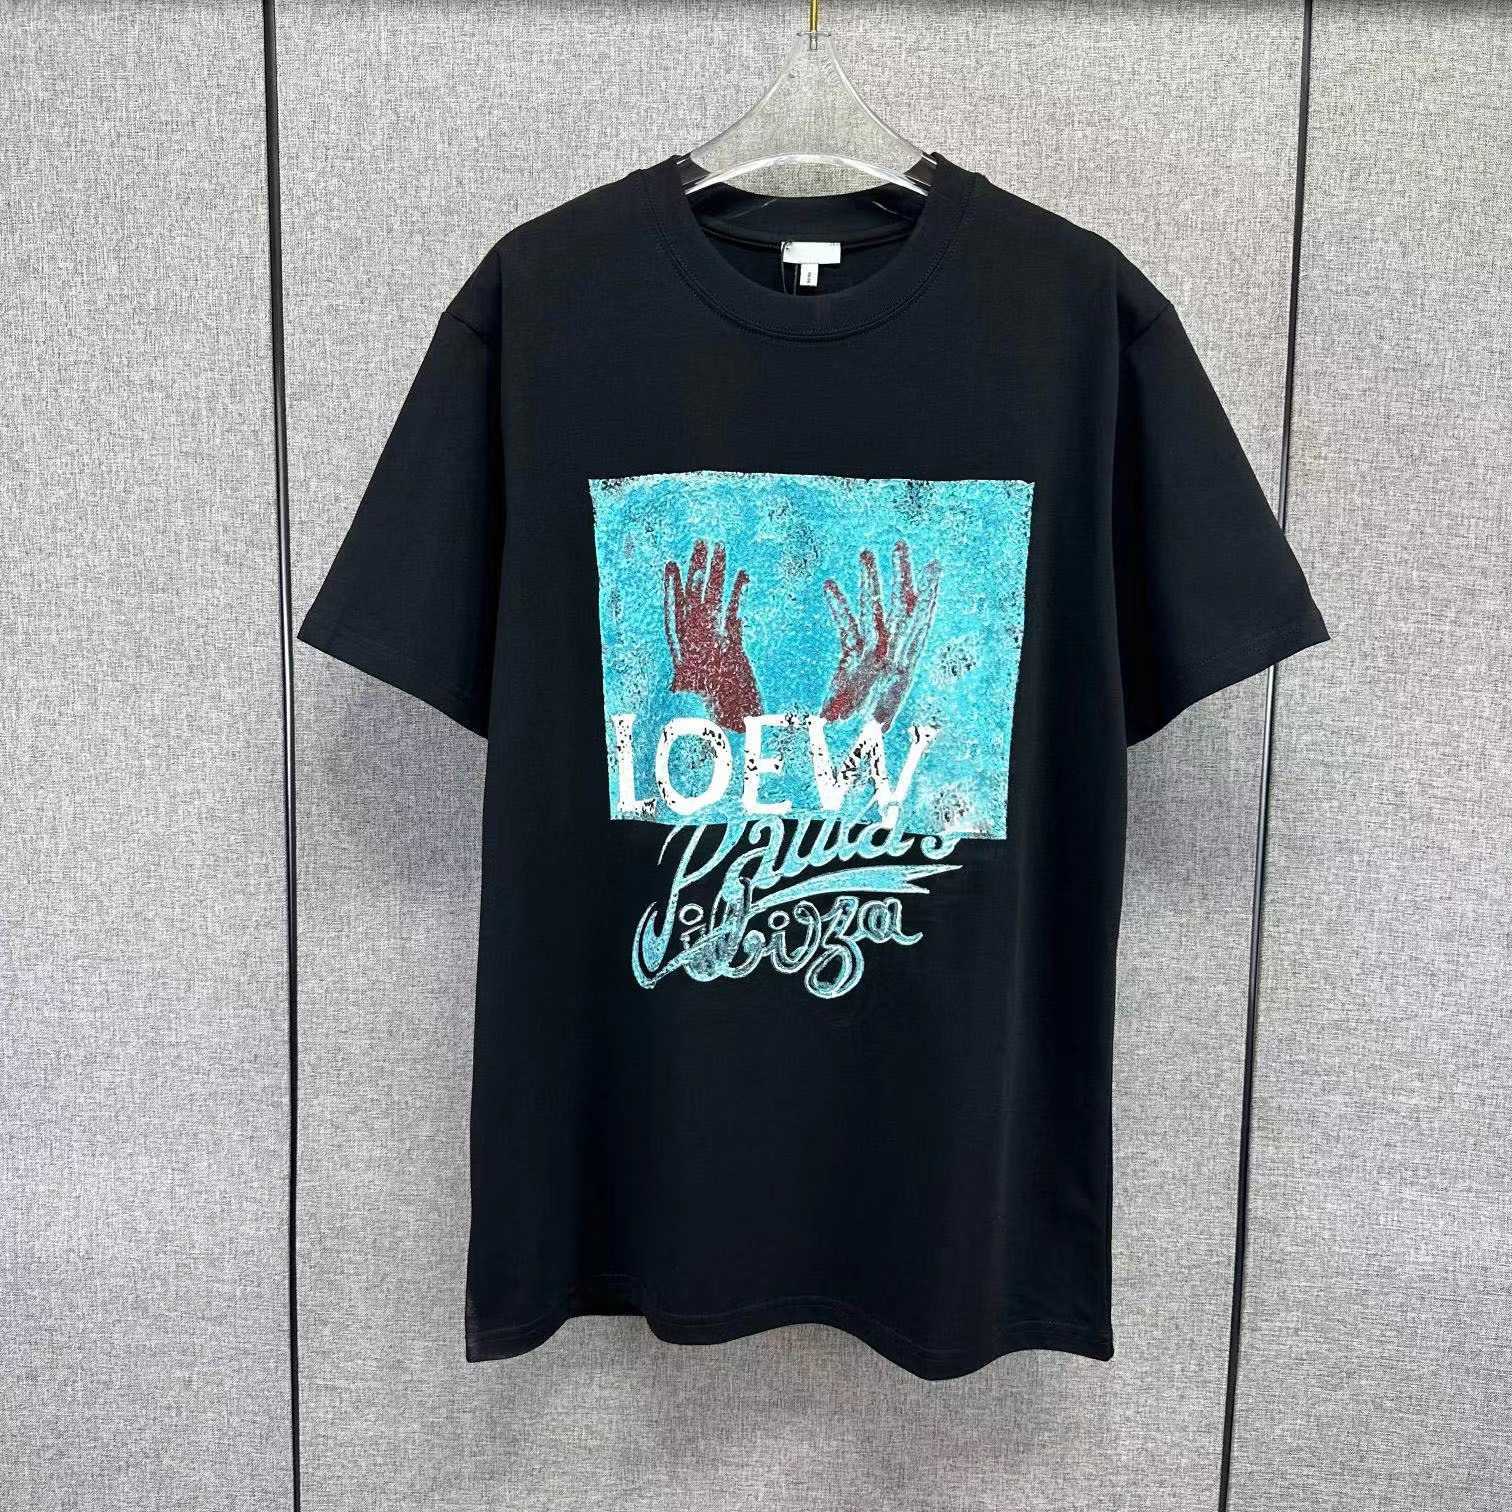 Designer nouvelles femmes t-shirt Shirt High Edition * 23 ans Summer Line Couple Style Loose Letter Print Sleeve T-shirt coréen de Luo Jia